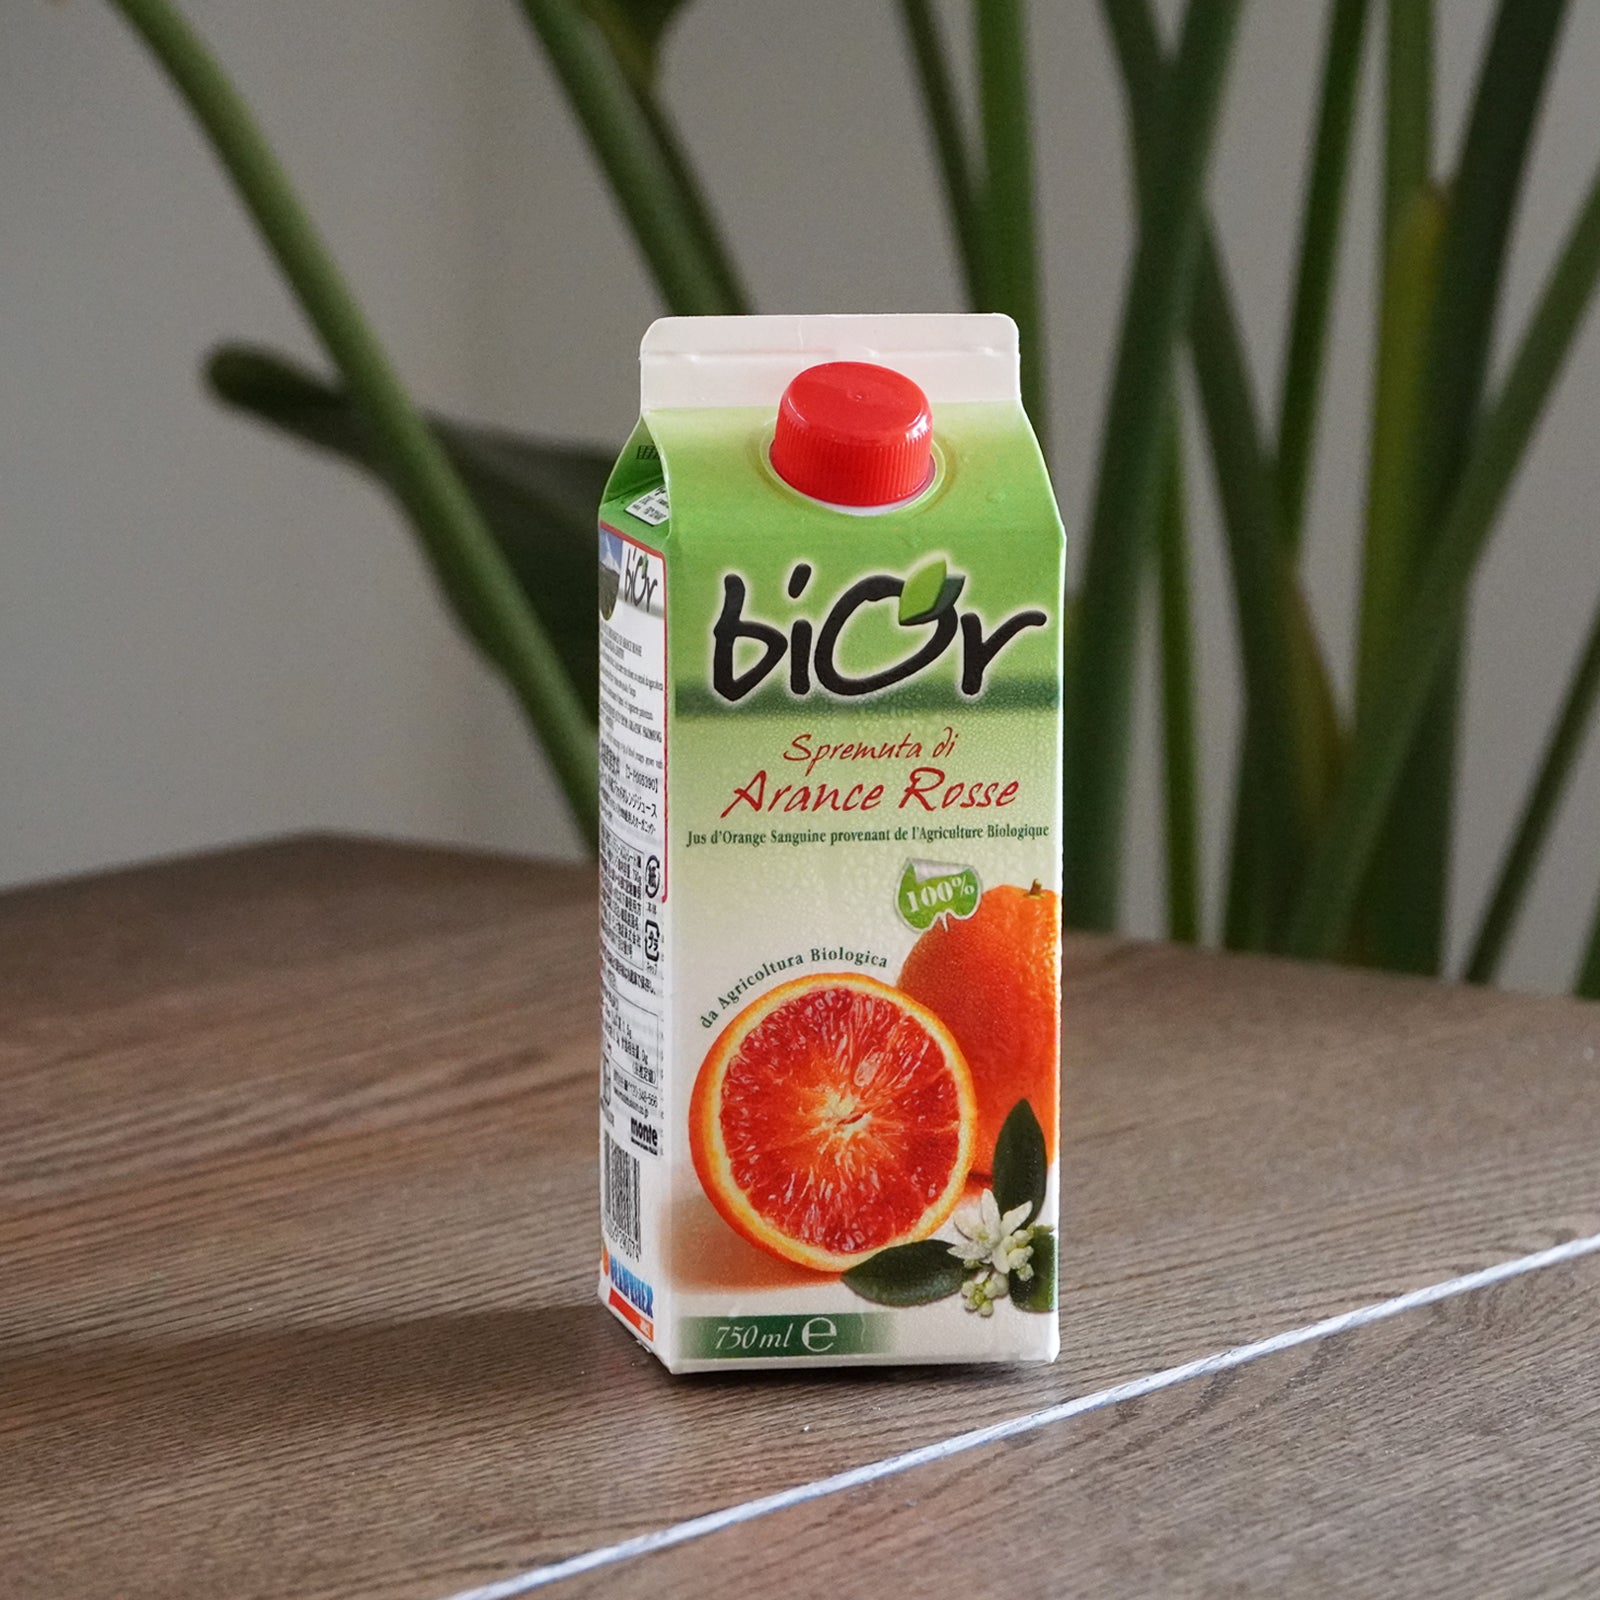 有機 JAS オーガニック ブラッド オレンジ ストレート ジュース 無添加 香料不使用 着色料不使用 イタリア産 (750ml) ホライズンファームズ